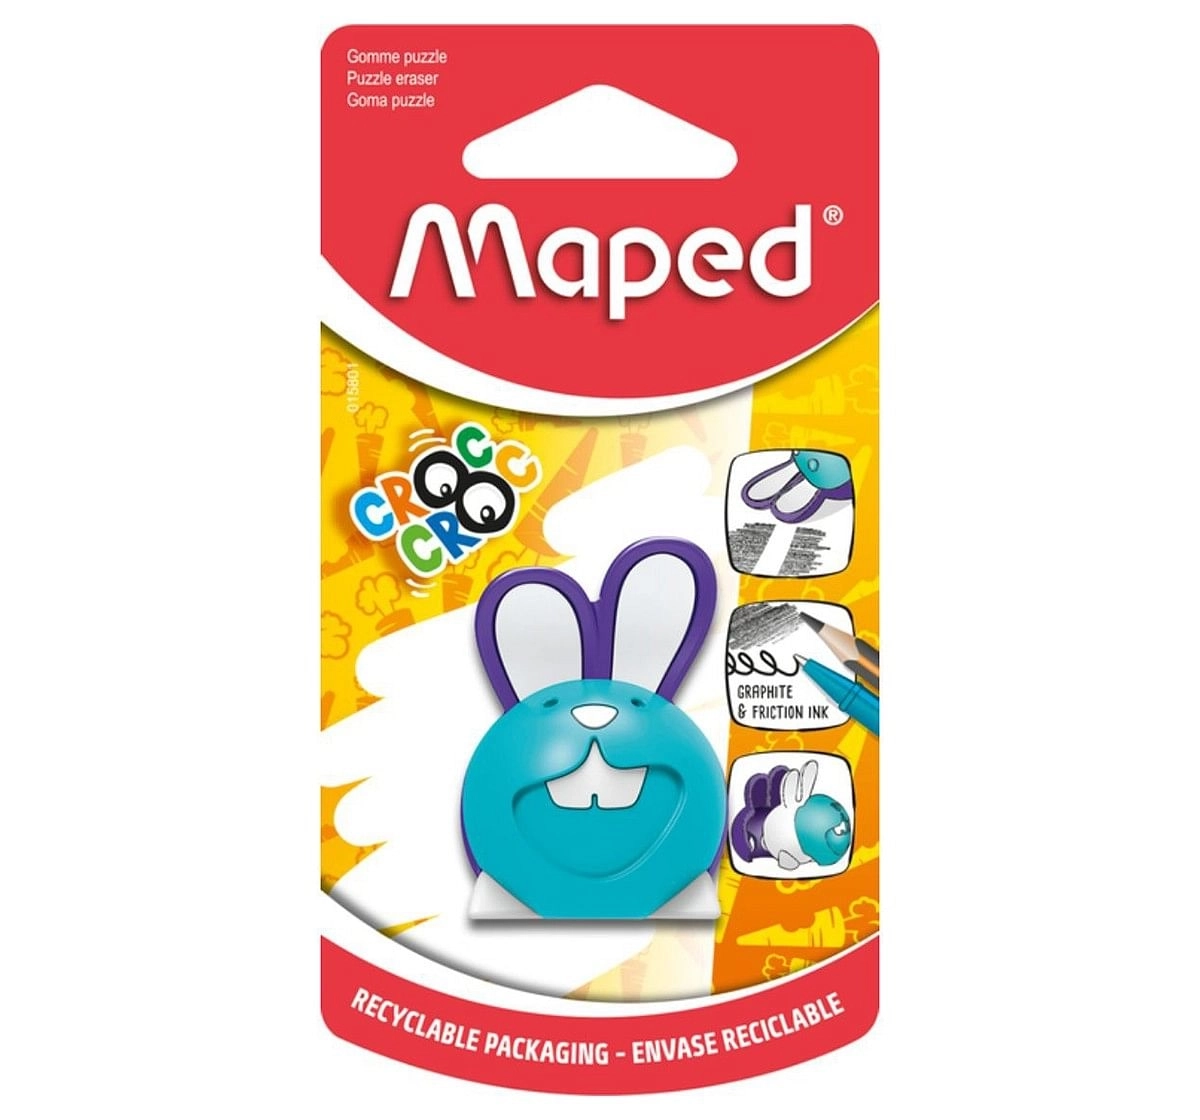 Maped Croc Puzzle Bunny Eraser, 7Y+ (Multicolour)